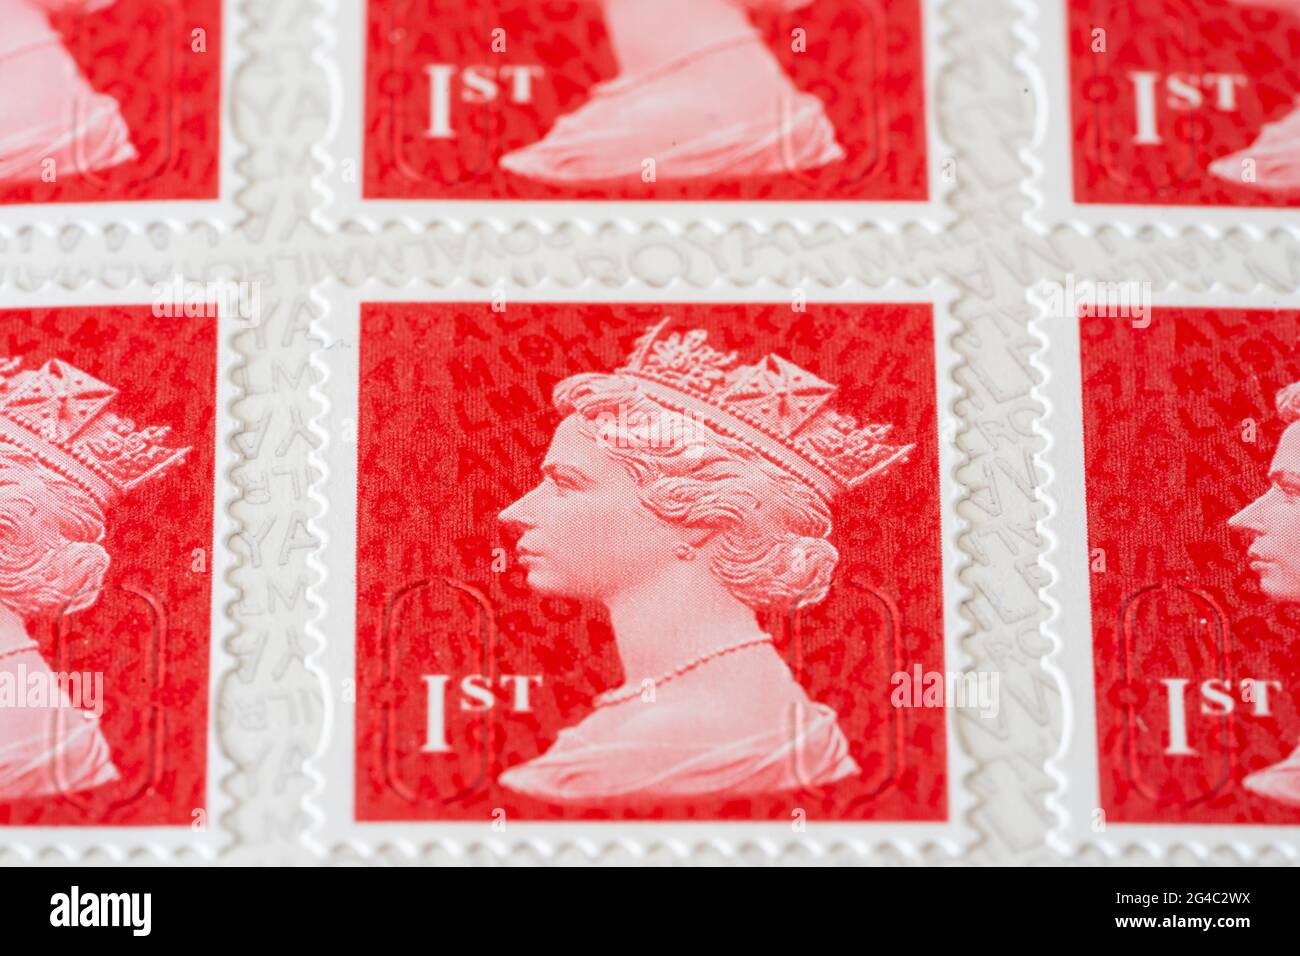 Scharlachrote Makroaufnahmen von Royal Mail erstklassige Briefmarken für Porto mit einem Bild des Kopfes von Königin Elizabeth II., große Schärfentiefe. VEREINIGTES KÖNIGREICH Stockfoto